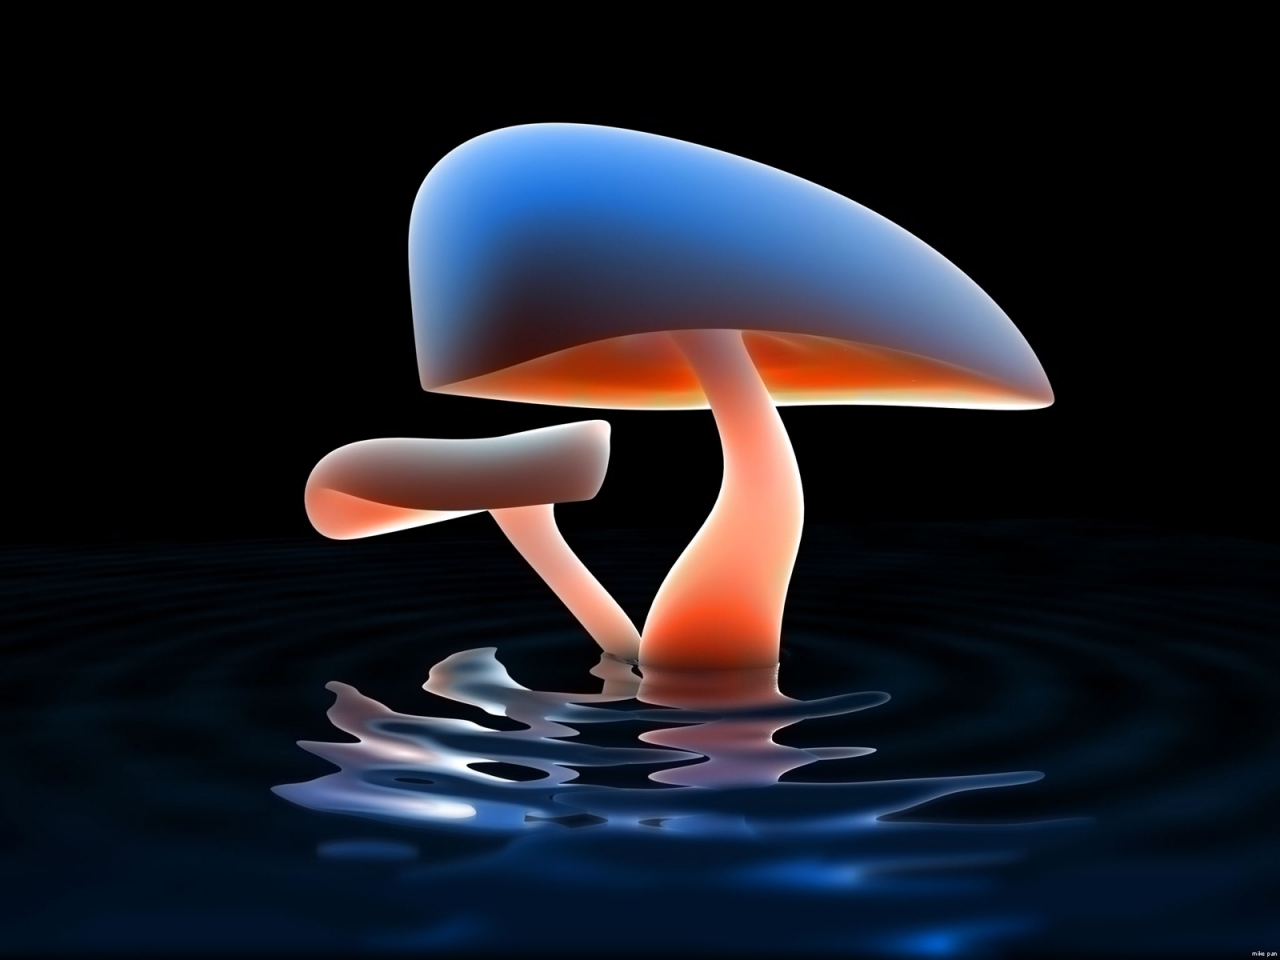 Mushroom Lake for 1280 x 960 resolution